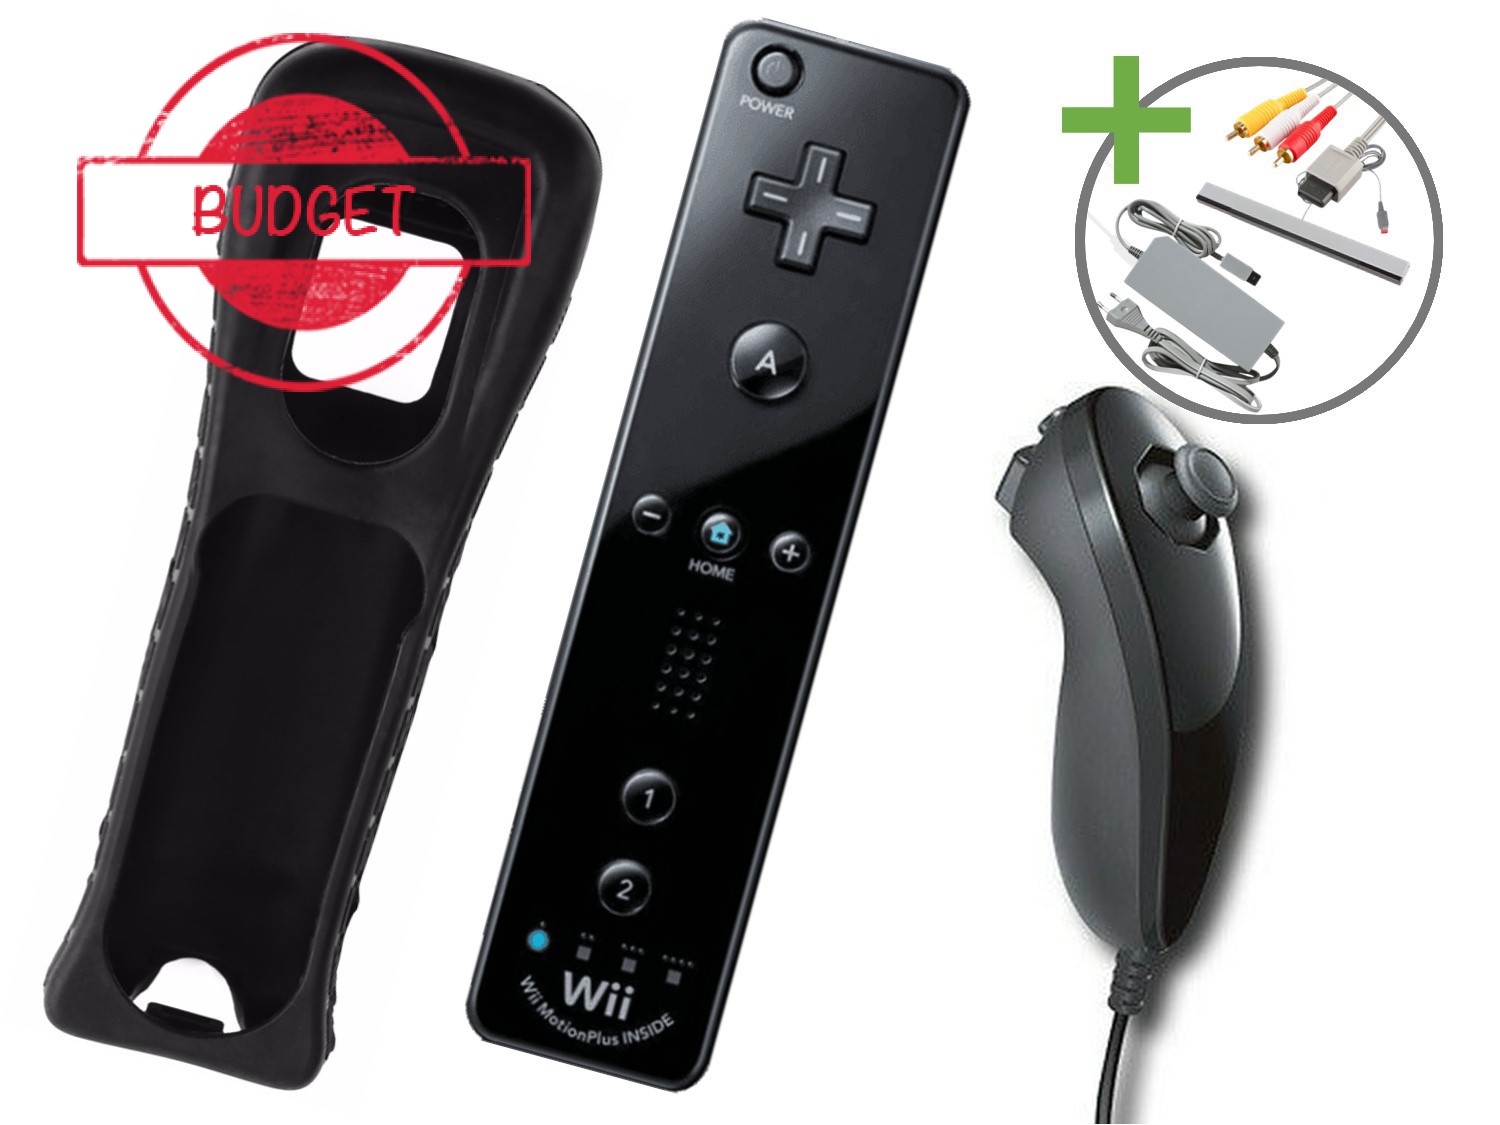 Nintendo Wii Starter Pack - New Super Mario Bros. Wii Edition - Budget - Wii Hardware - 3